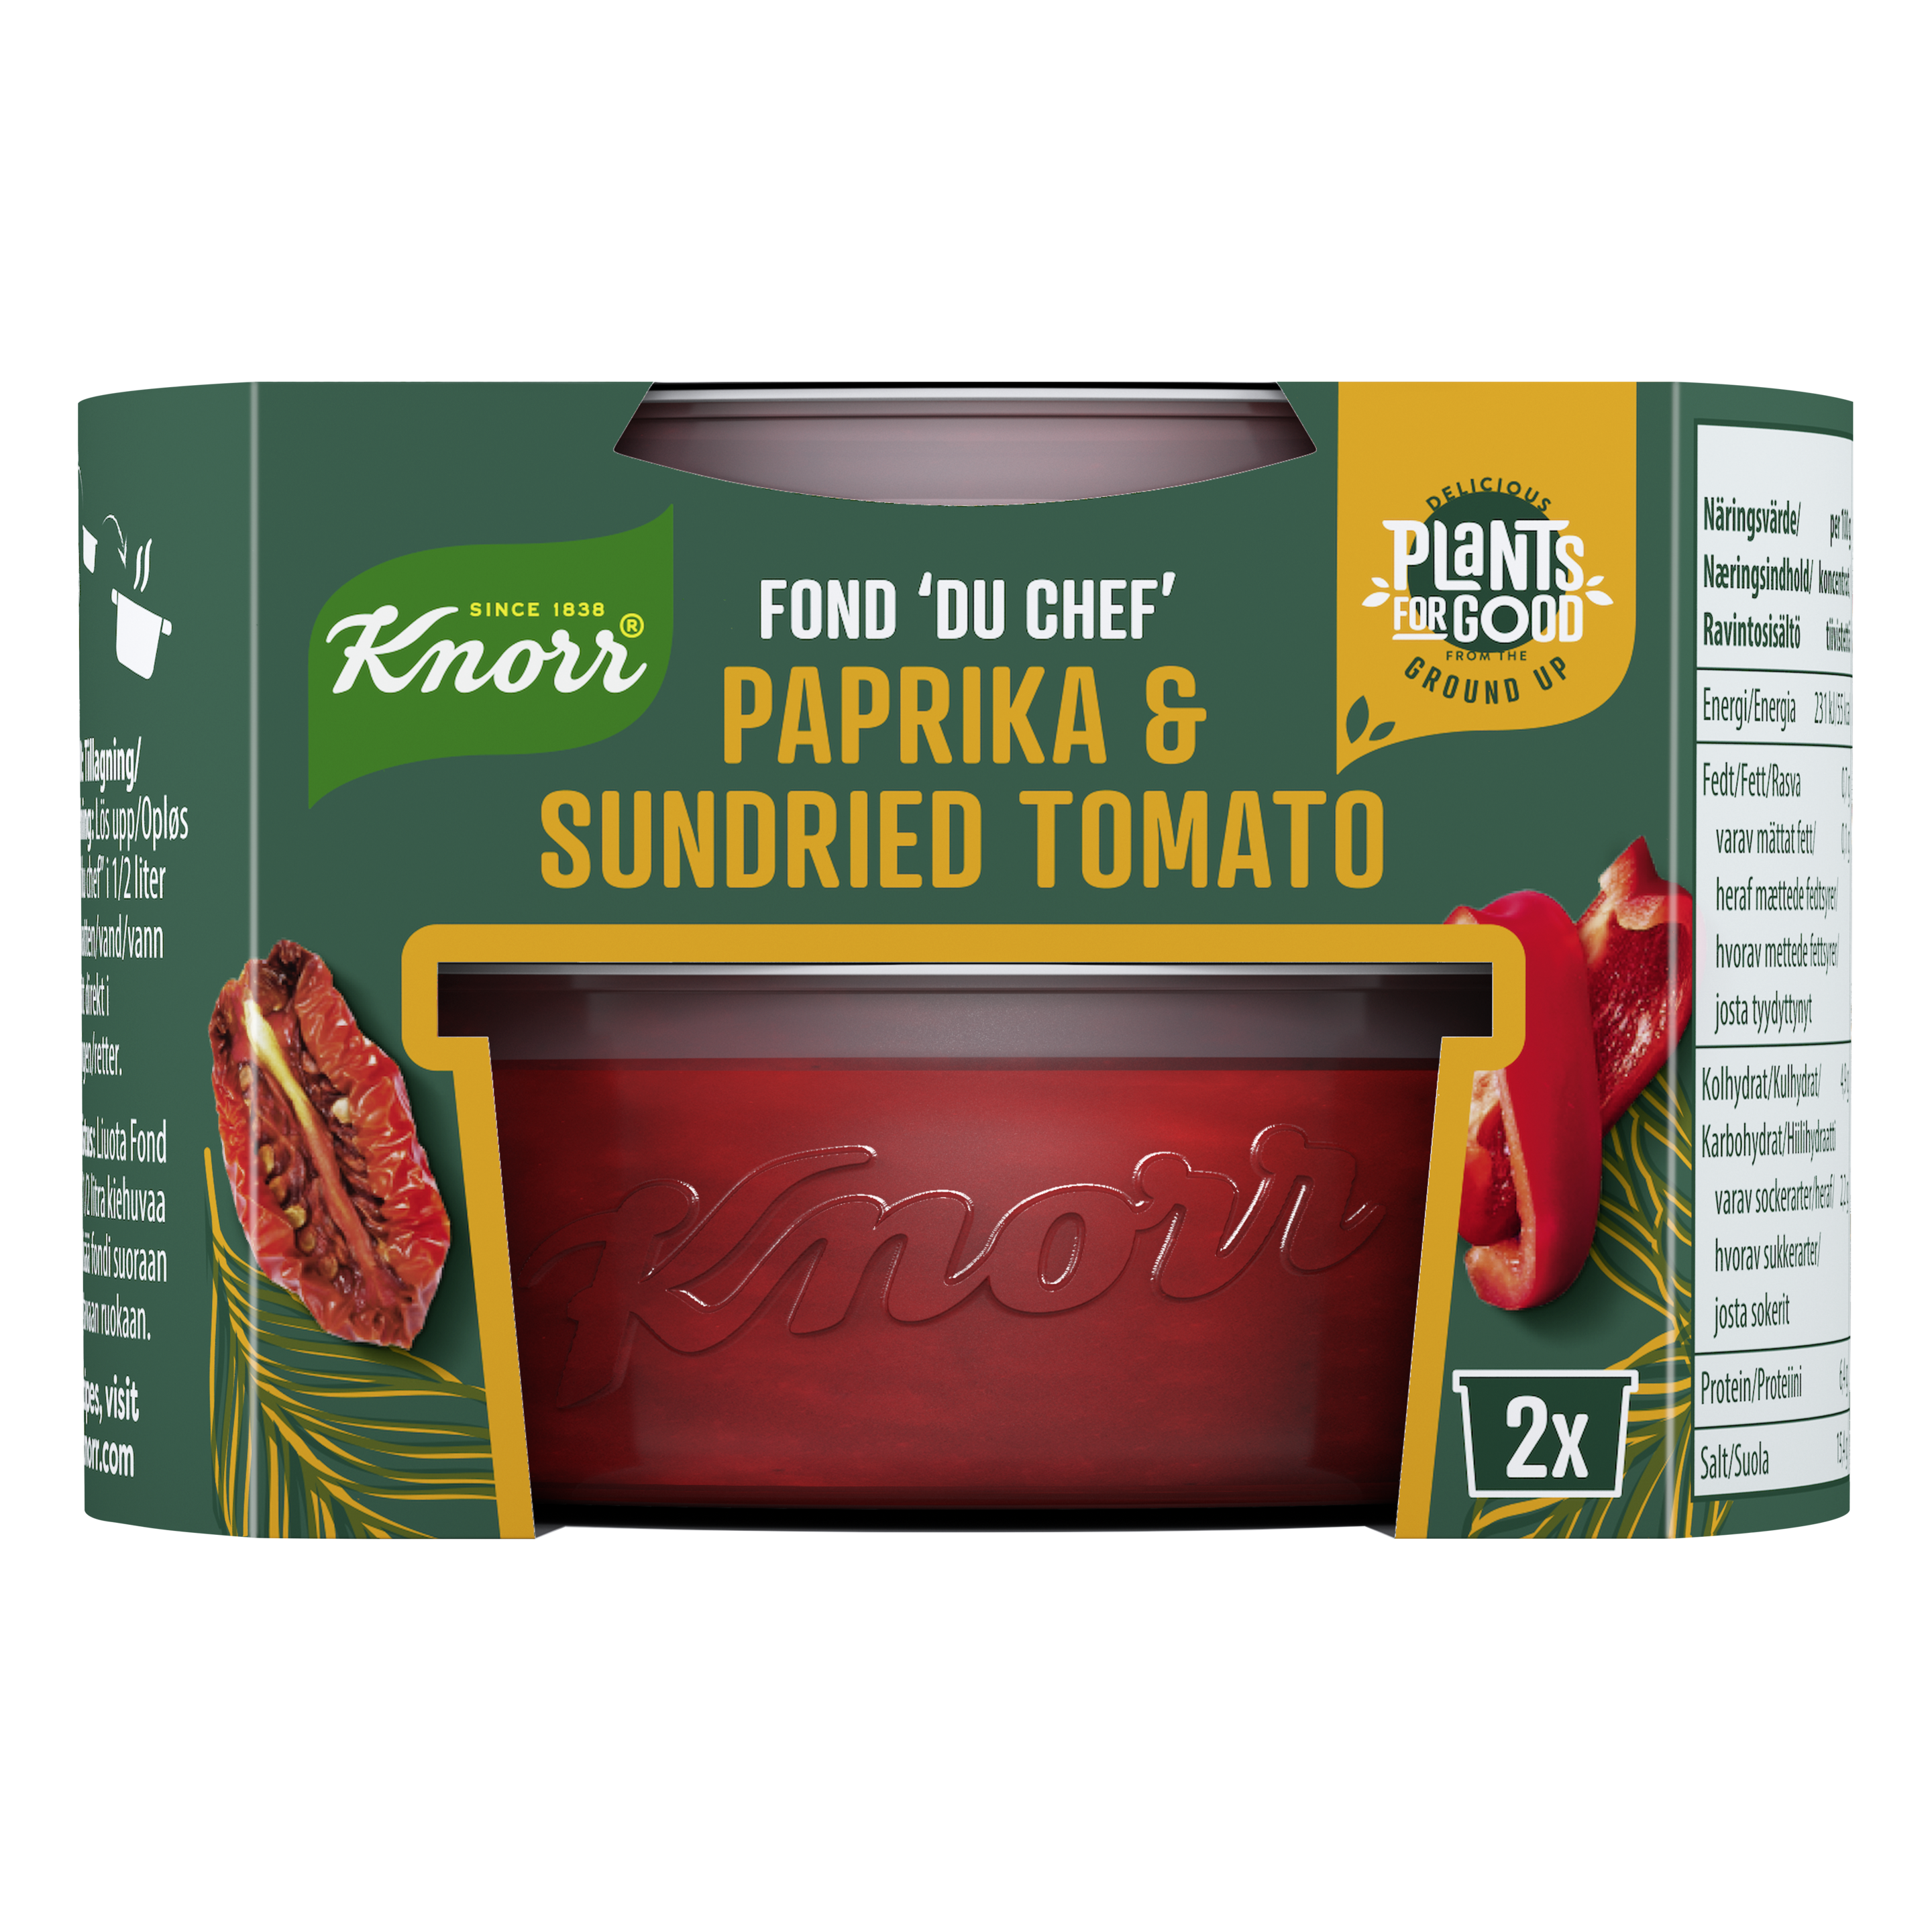 Fond "du Chef" Paprika & Sundried Tomato